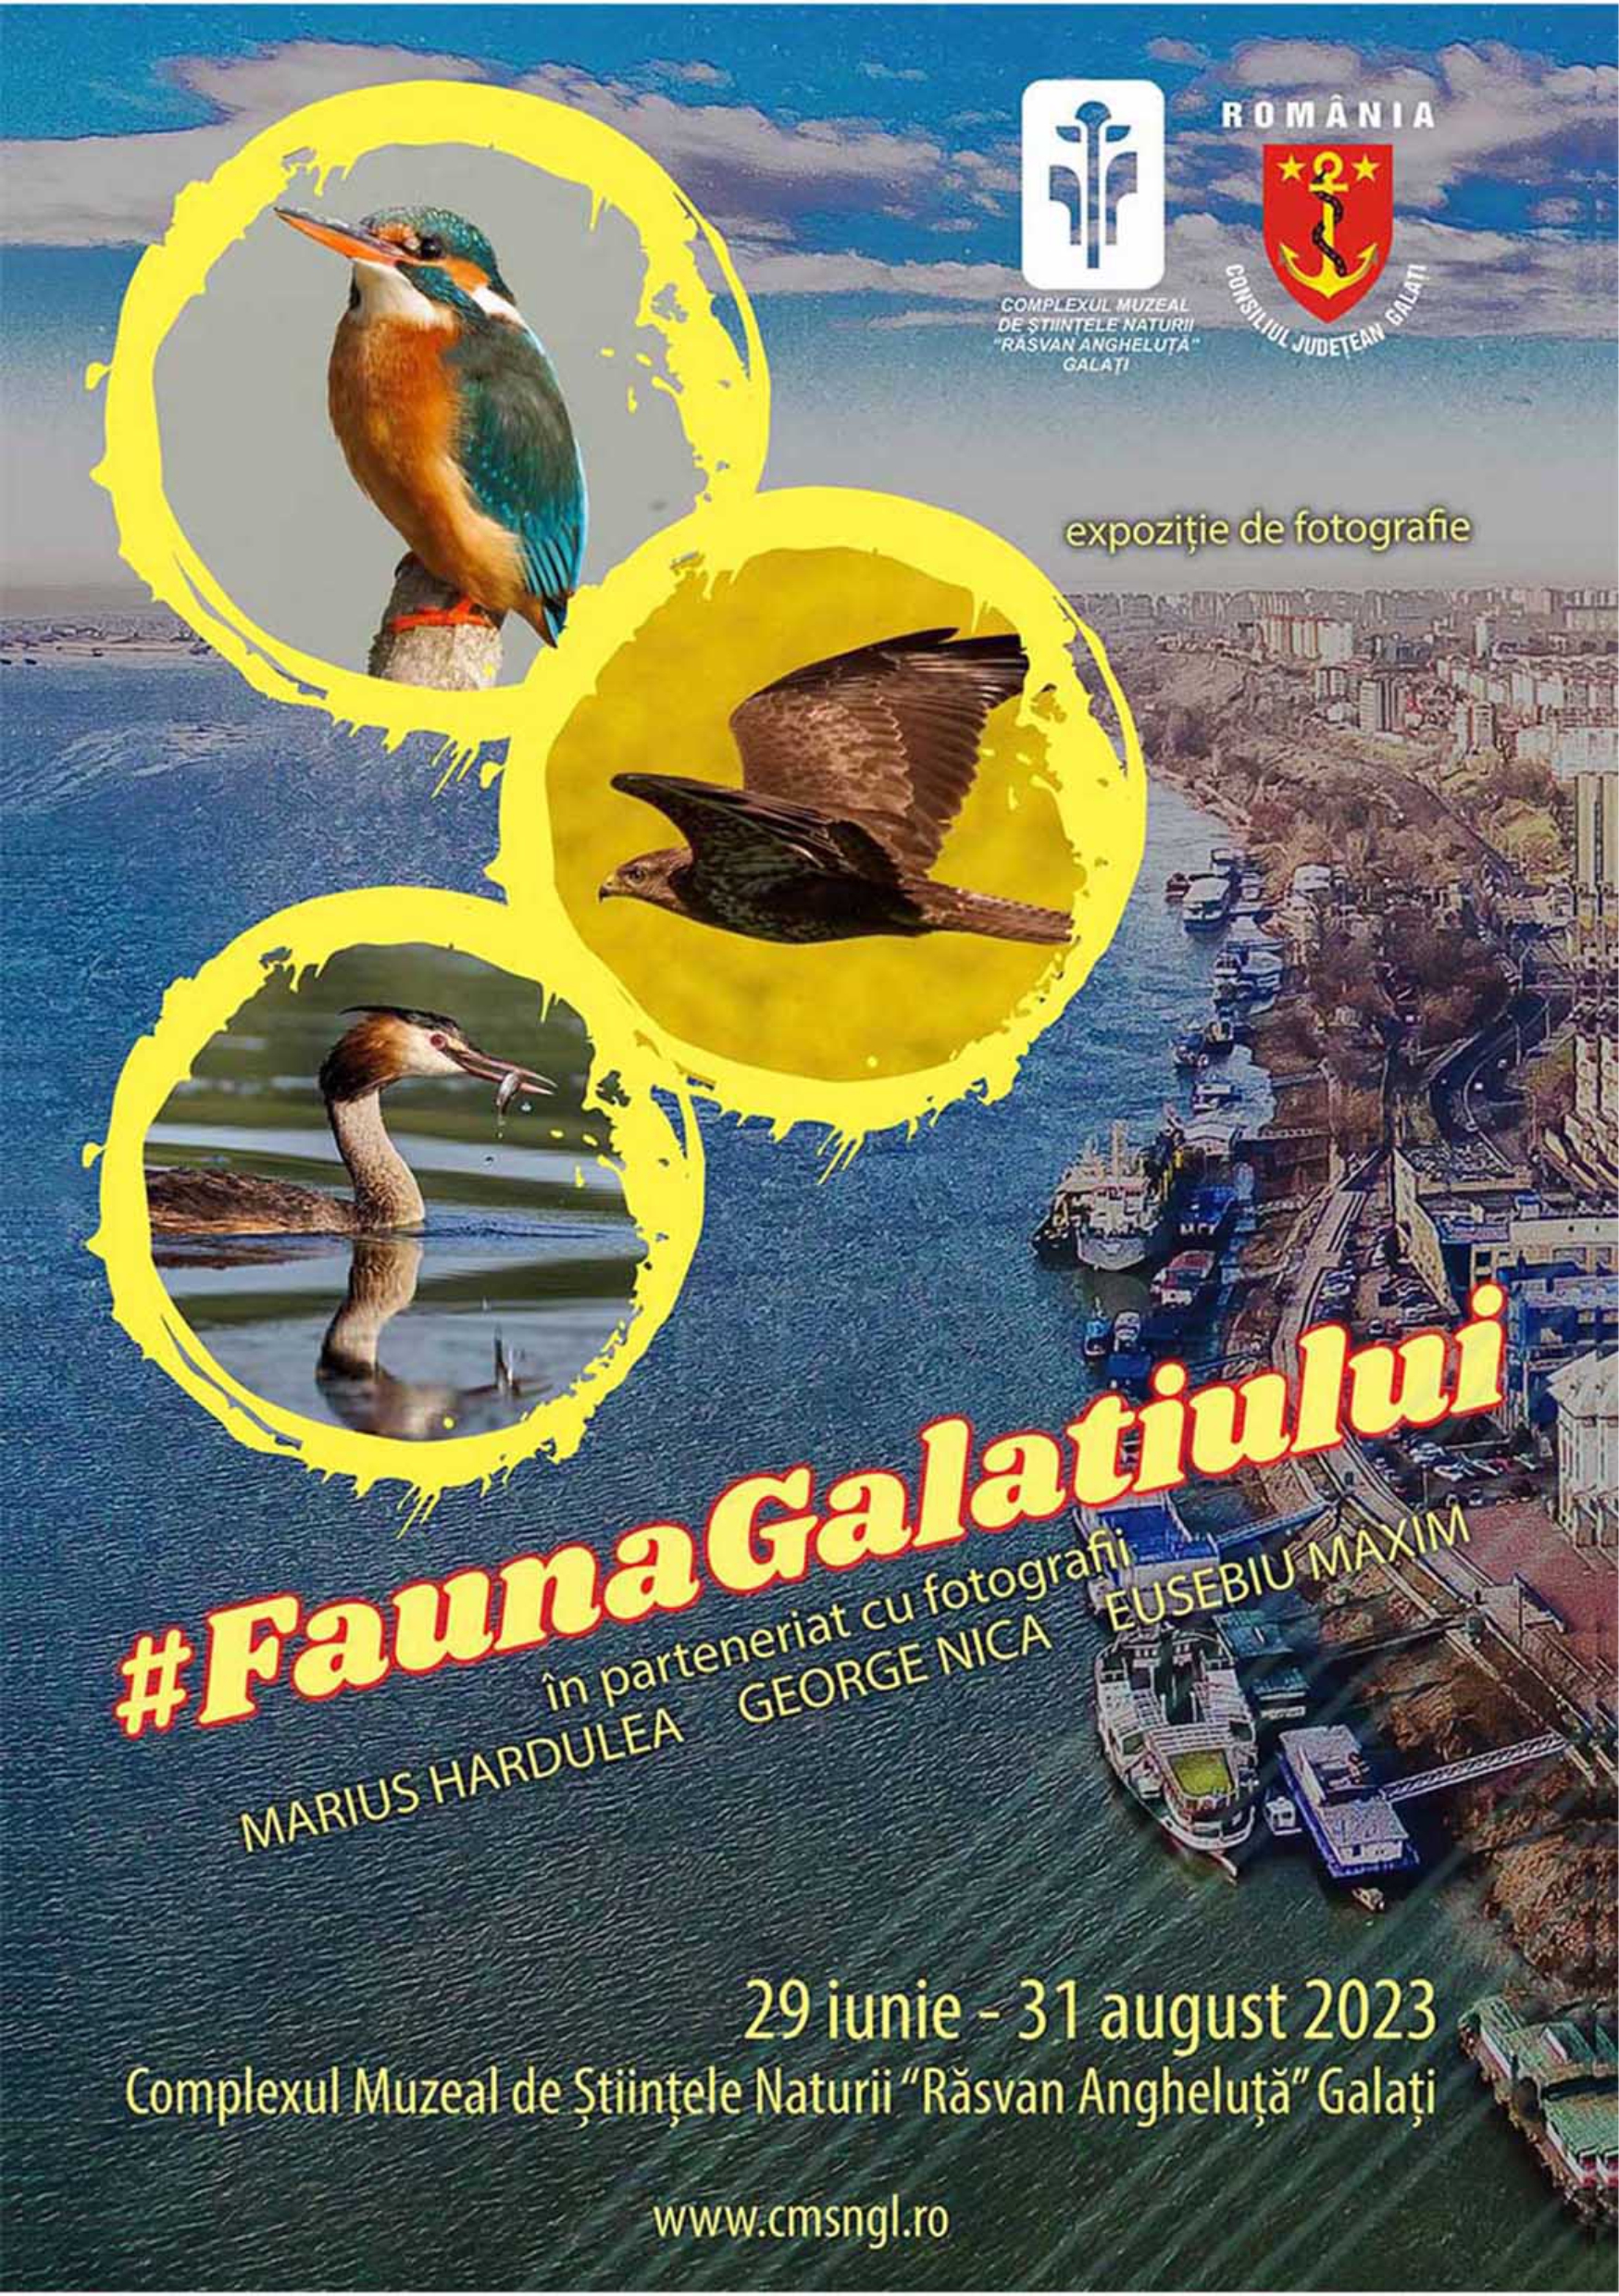 #FaunaGalaţiului: Expoziţie de fotografie la Complexul Muzeal Galaţi